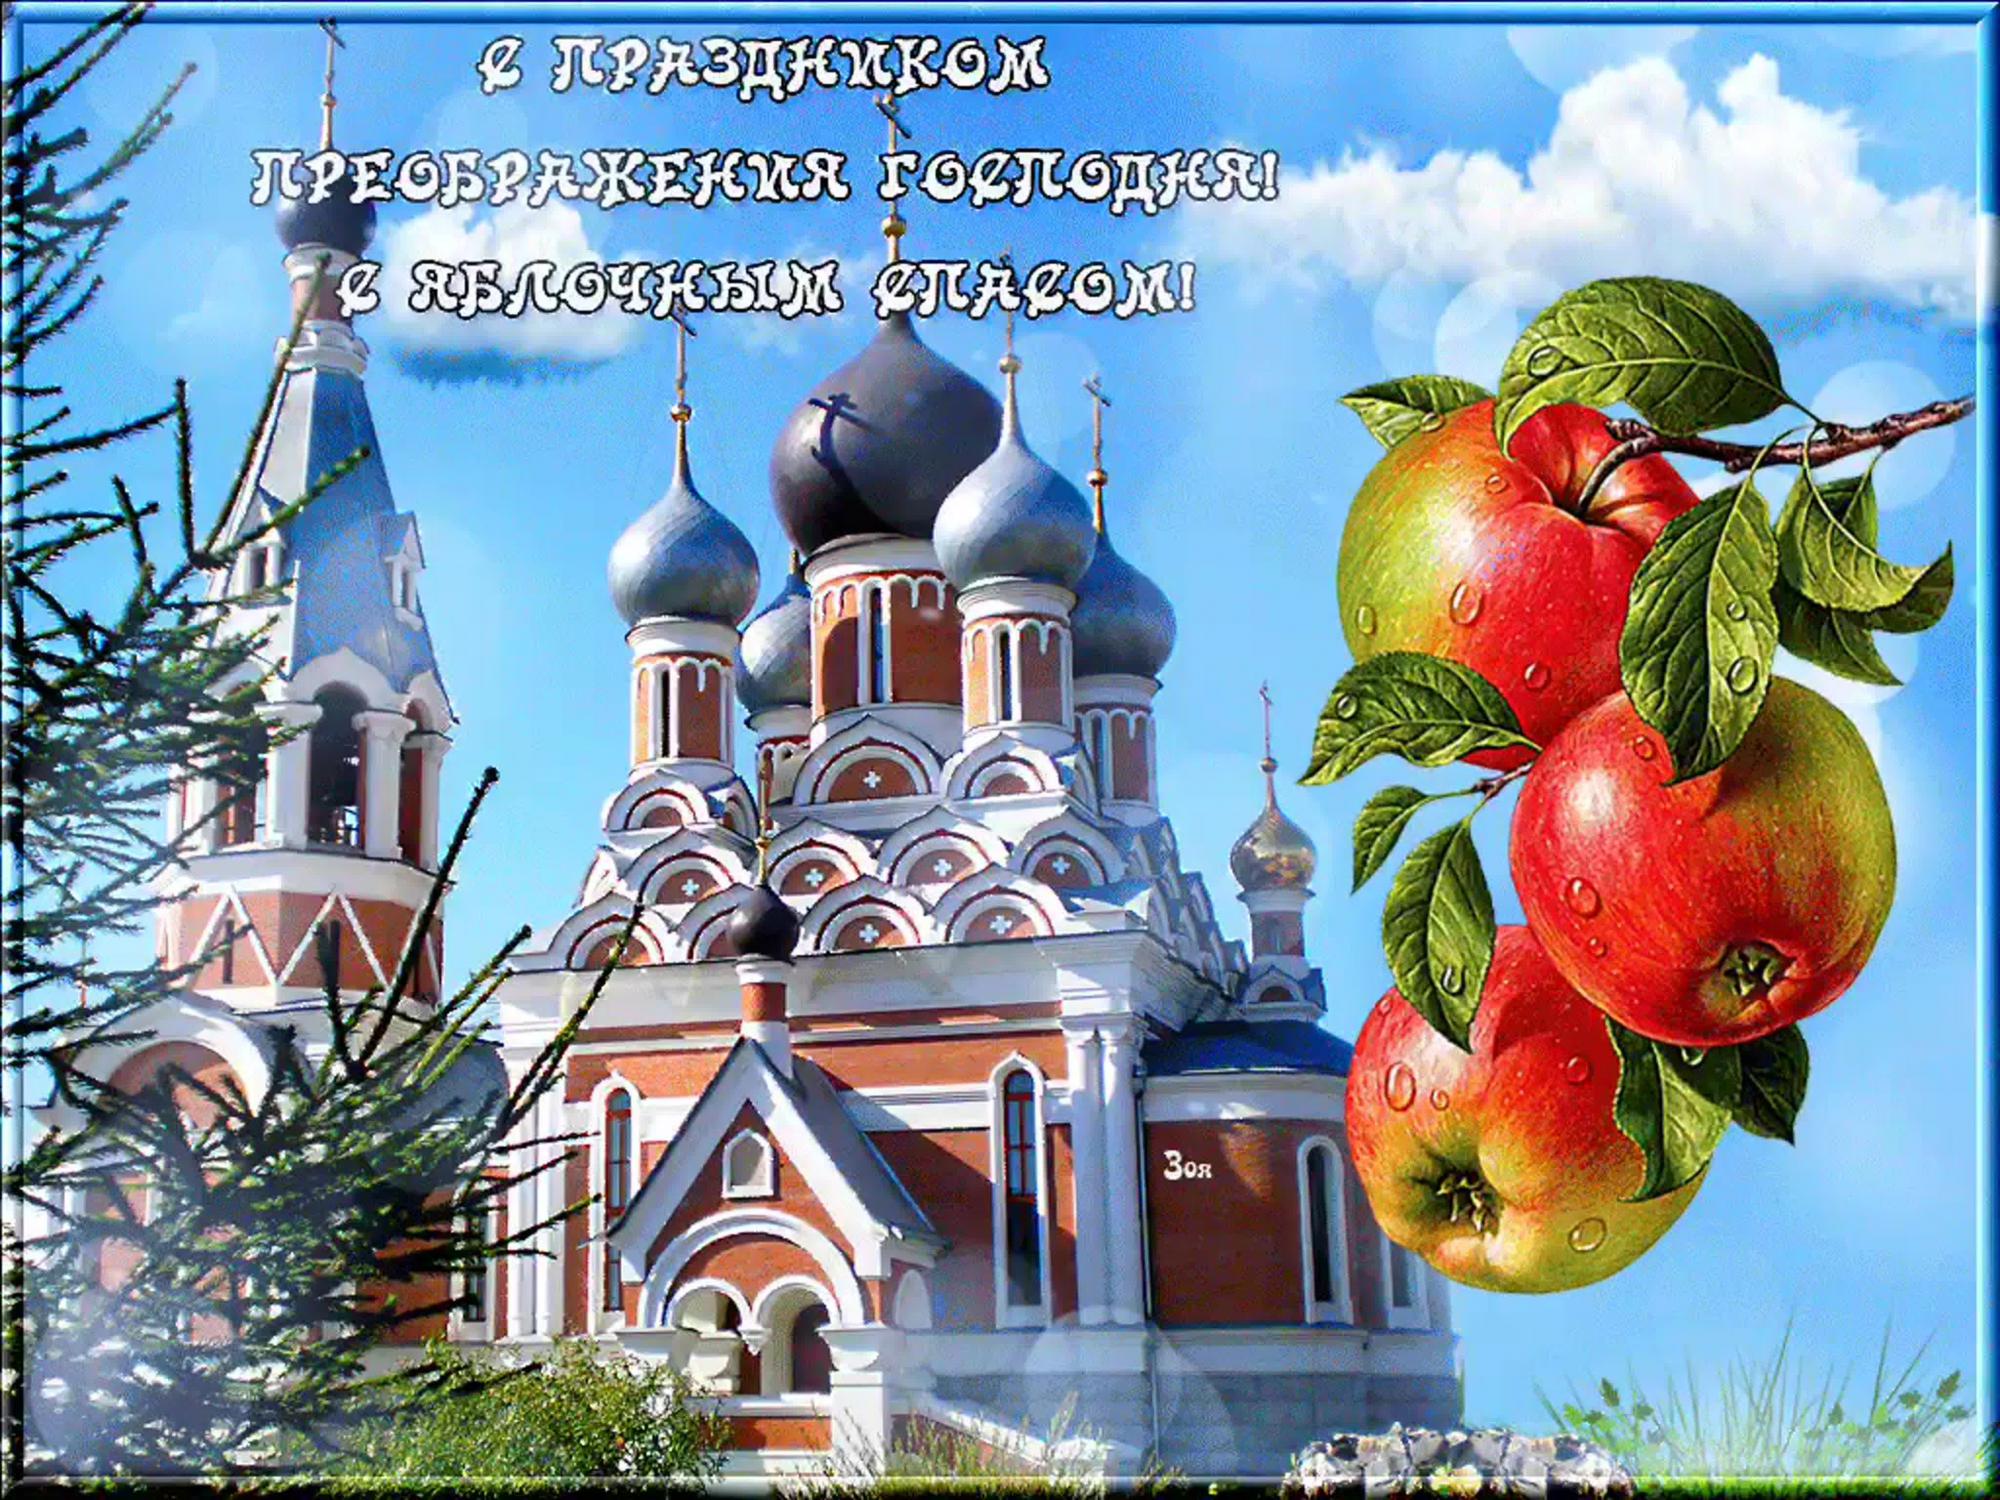 1666281101_45-mykaleidoscope-ru-p-pozdravleniya-s-prazdnikom-preobrazheniya-50.jpg